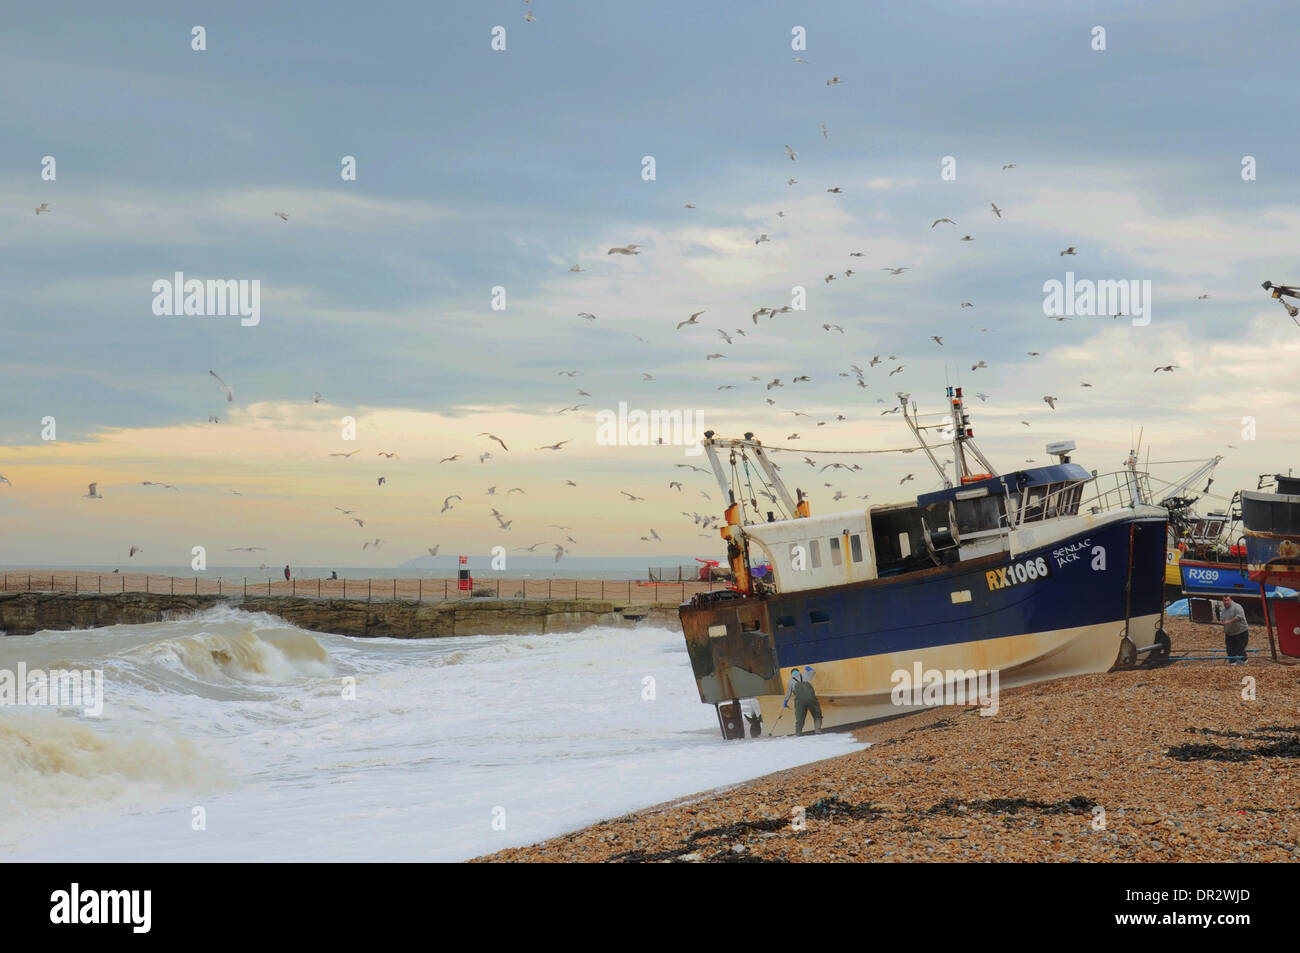 Hastings, East Sussex, Regno Unito. 18 gennaio, 2014. La pesca rimane un business rischioso sulla costa sud. Le condizioni tempestose rendendo barca lancia rare. L'industria è stata duramente colpita dalle condizioni atmosferiche. Credito: David Burr/Alamy Live News Foto Stock